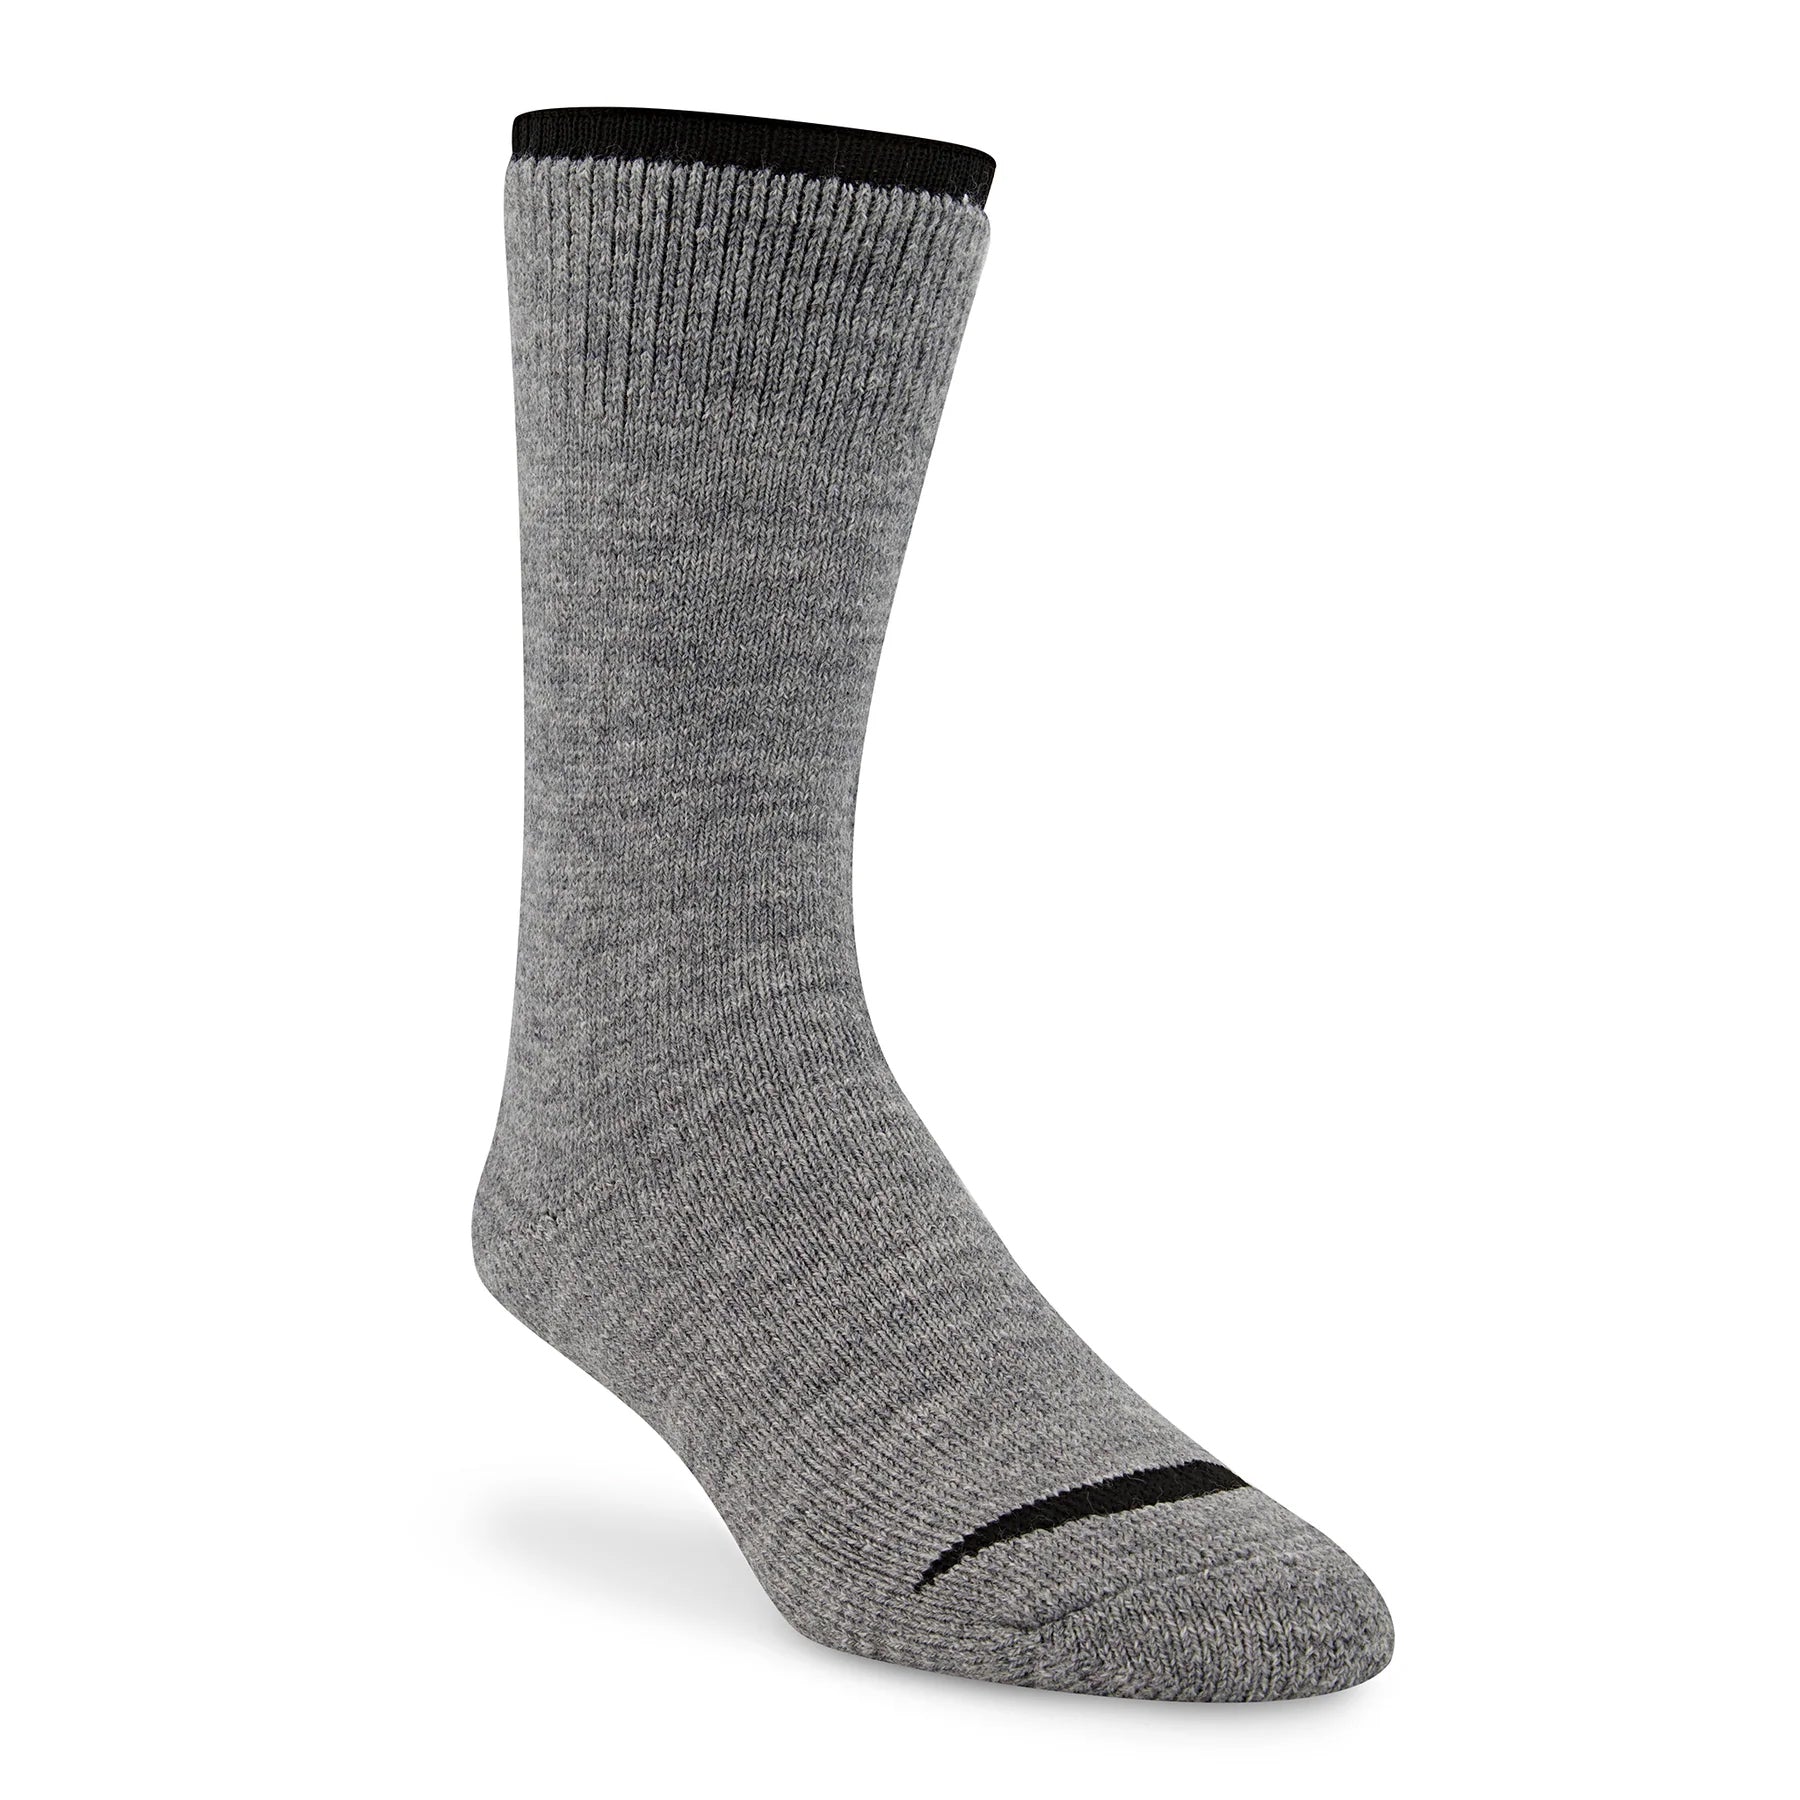 Regular Sizes - Socks